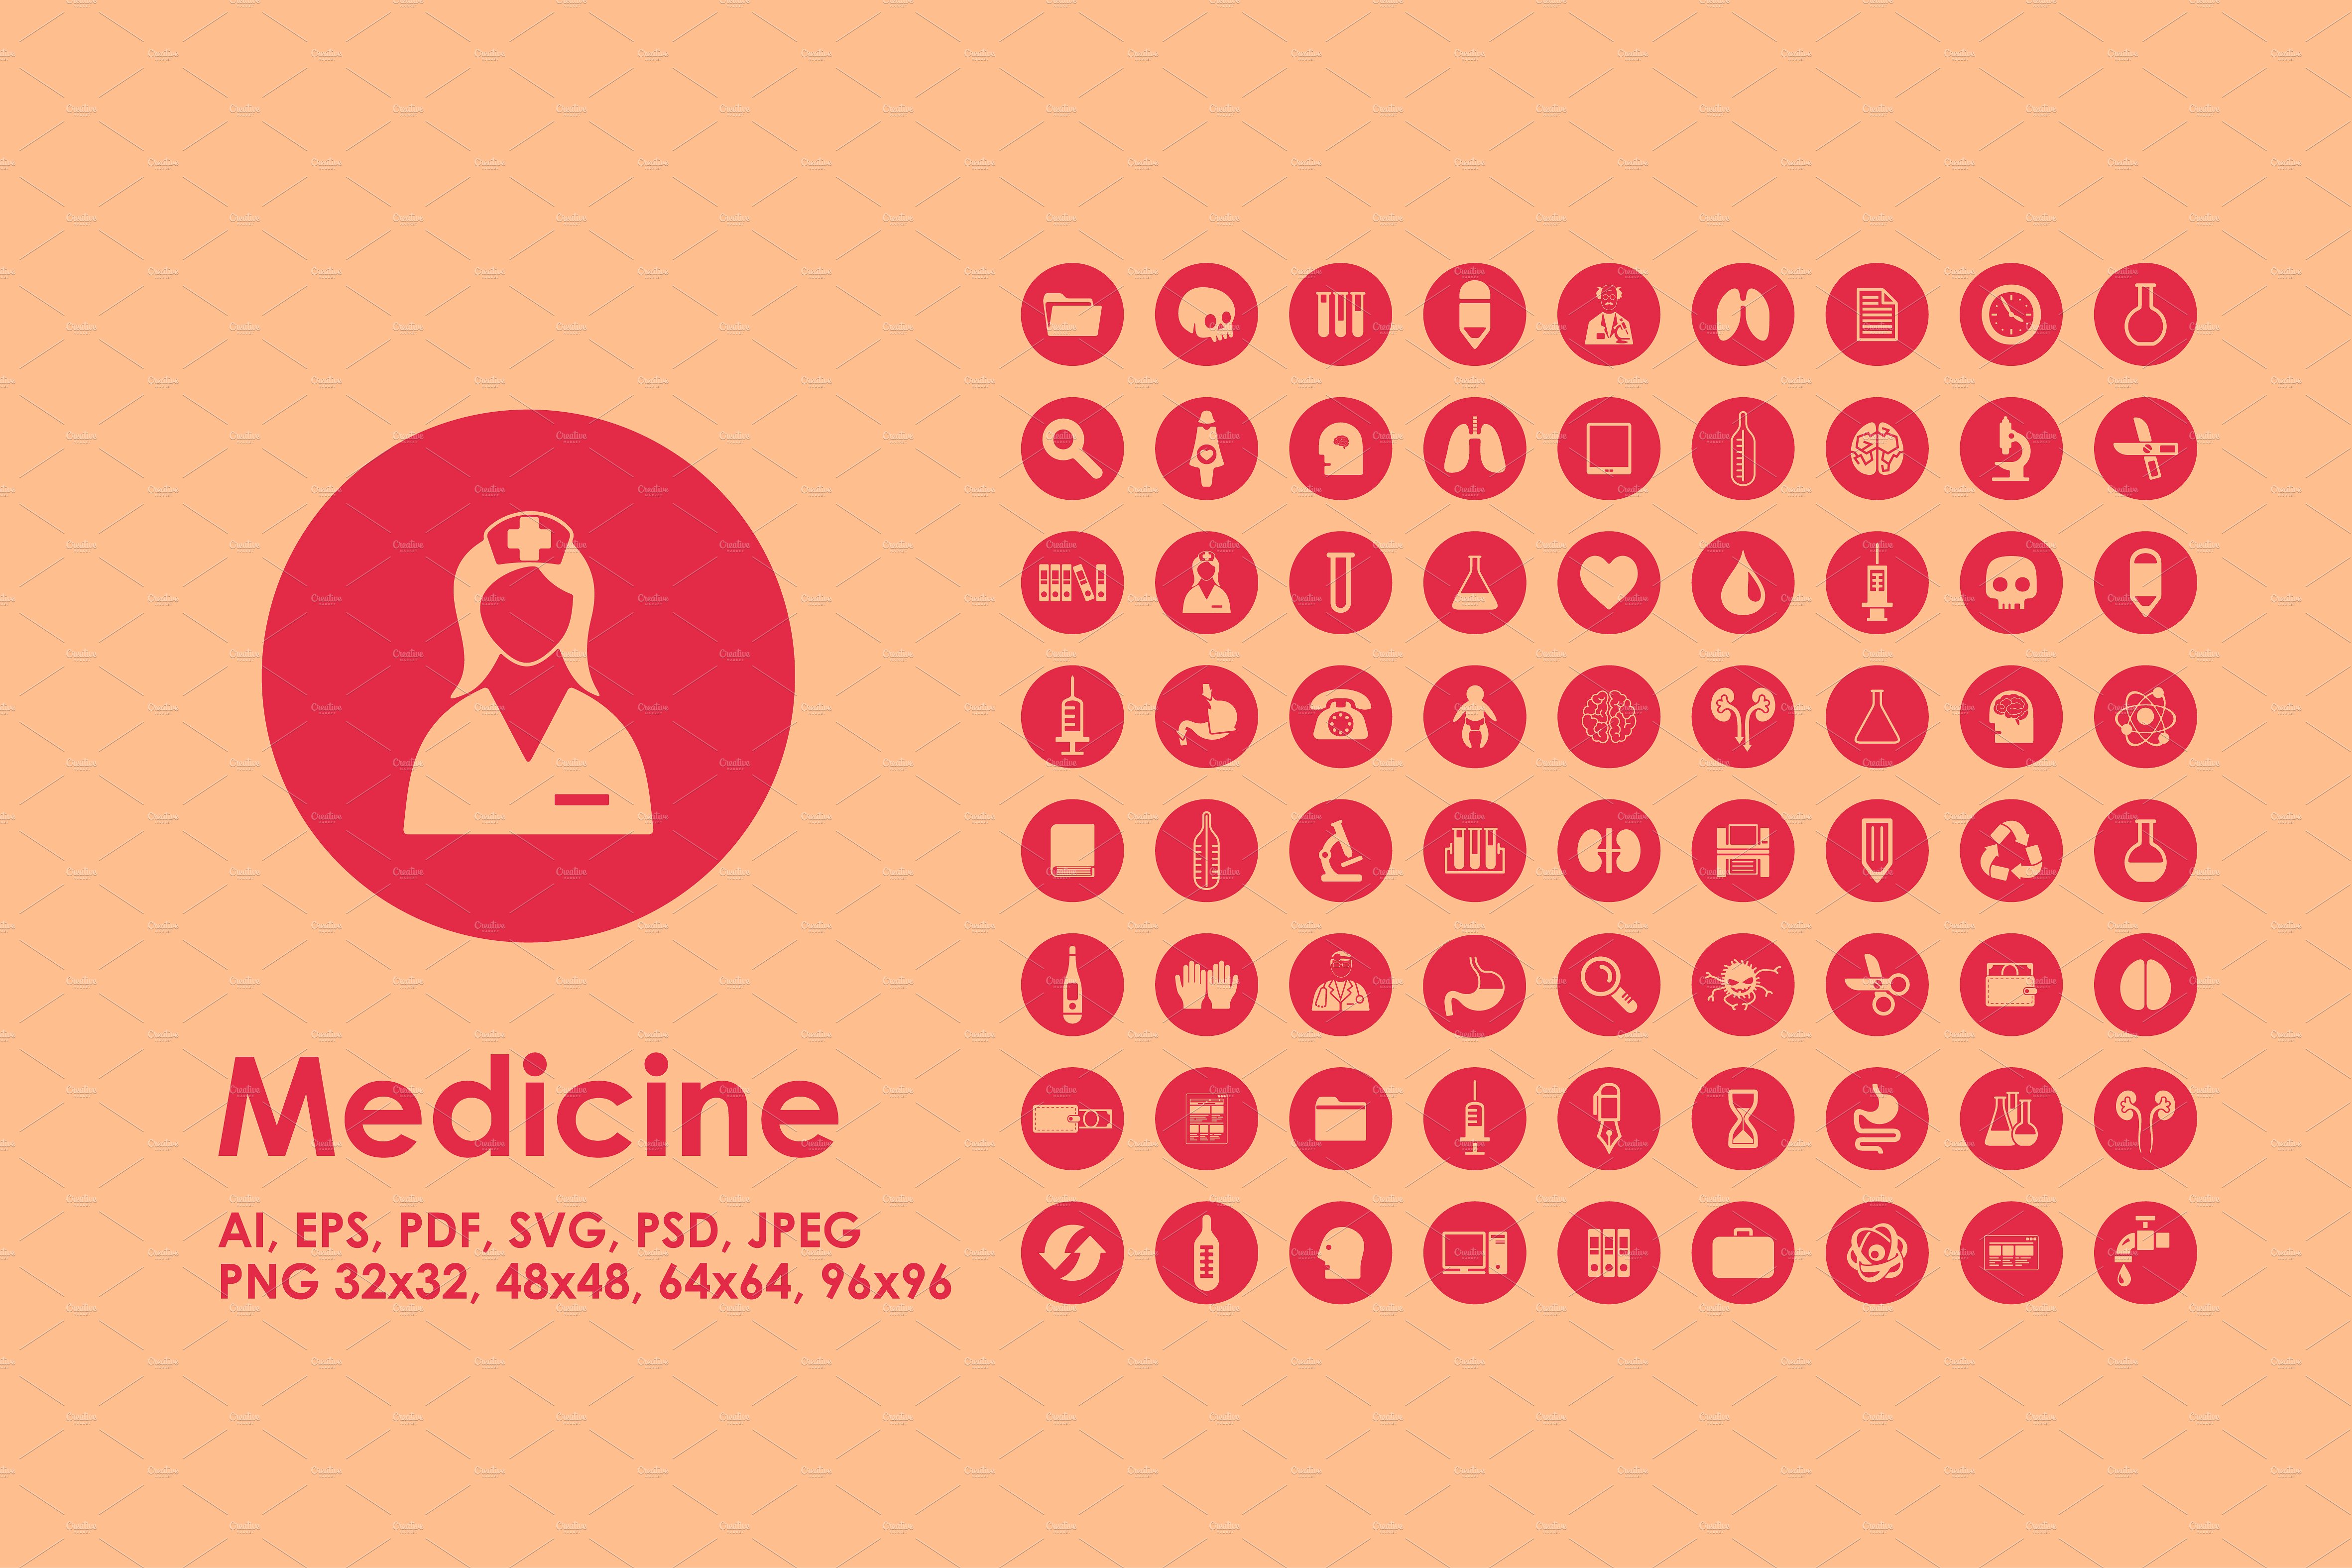 医疗矢量图标素材 72 medicine icons #13